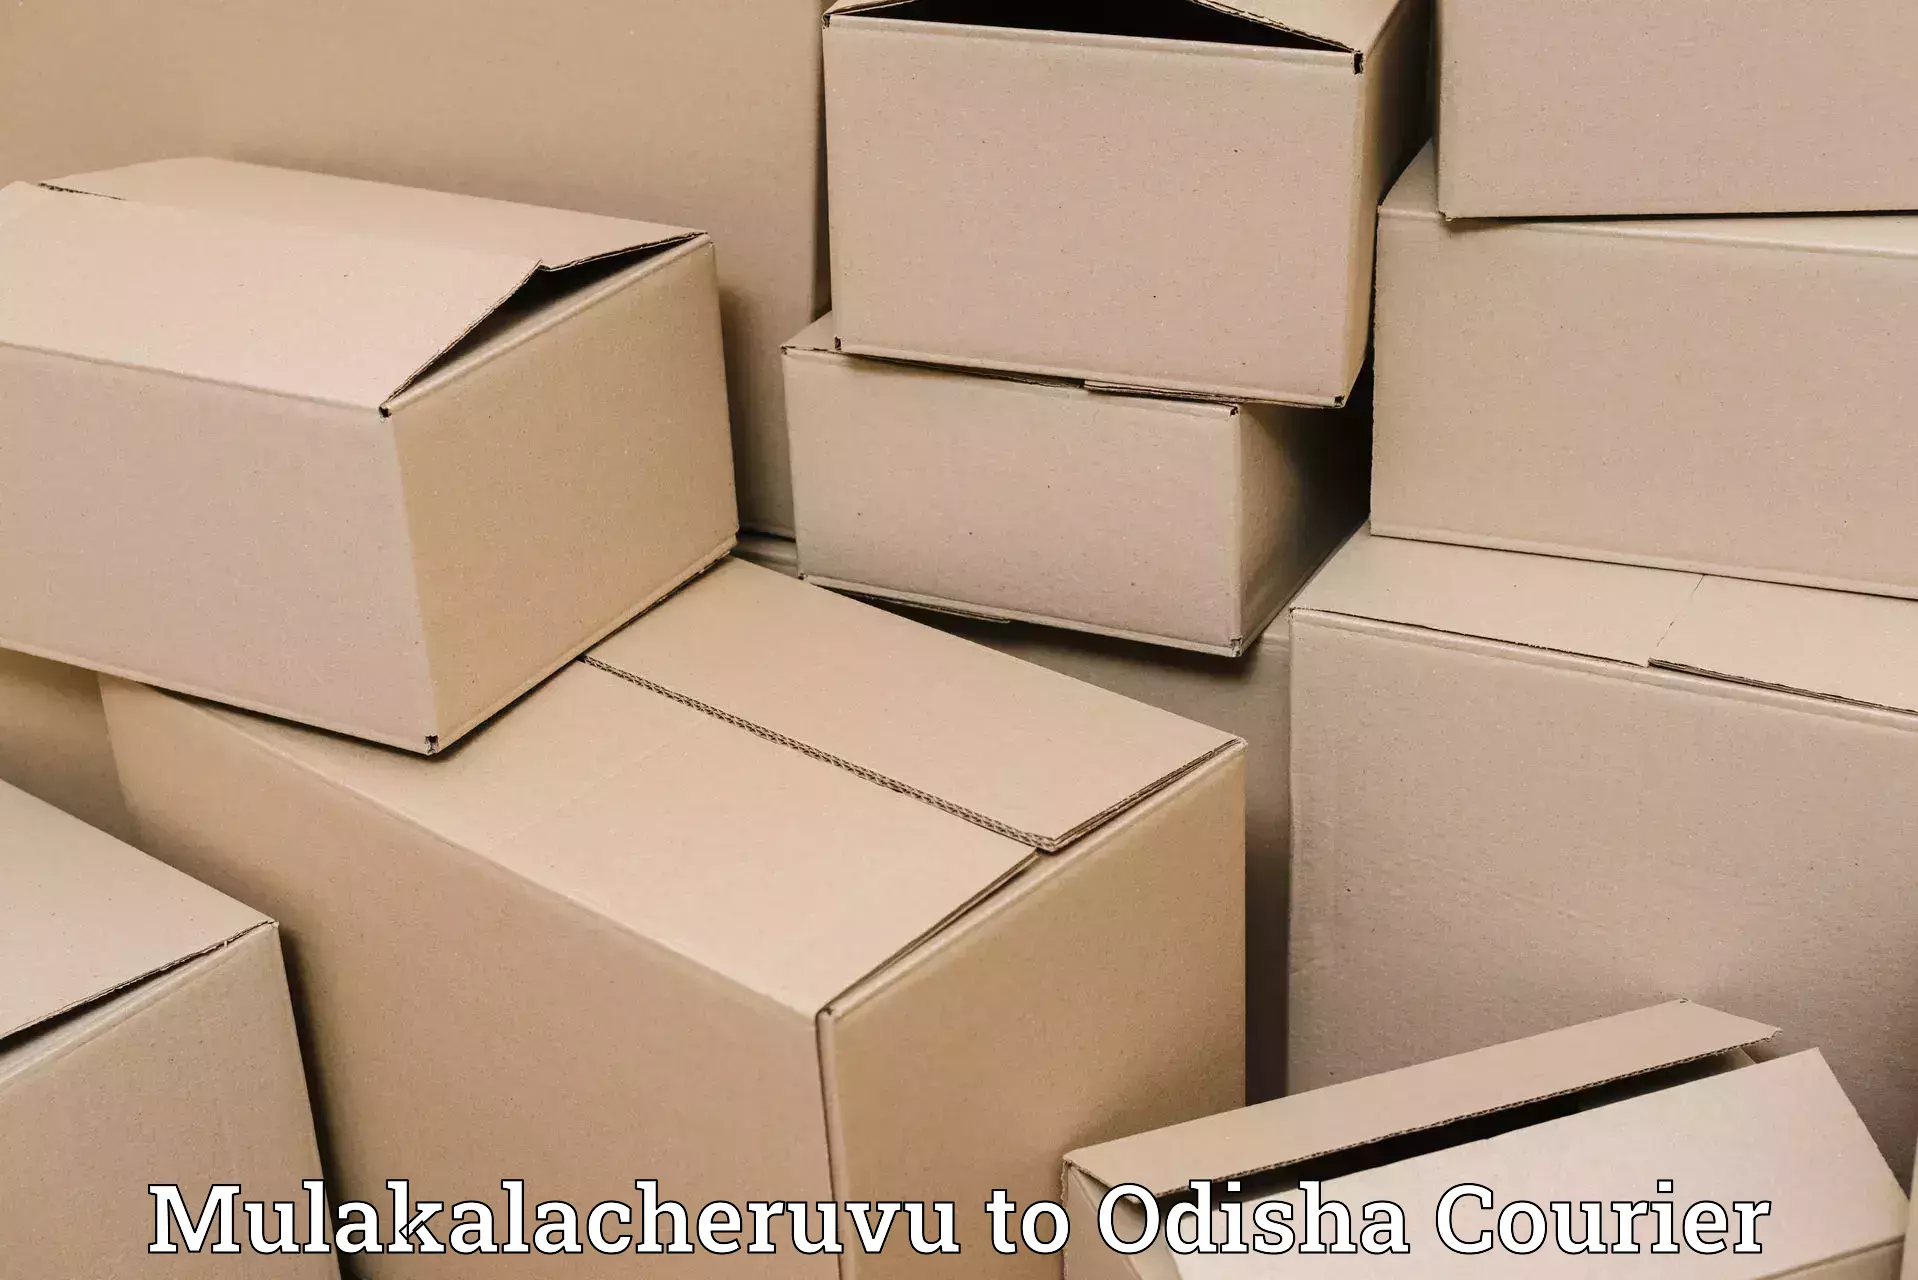 Ocean freight courier Mulakalacheruvu to Morada